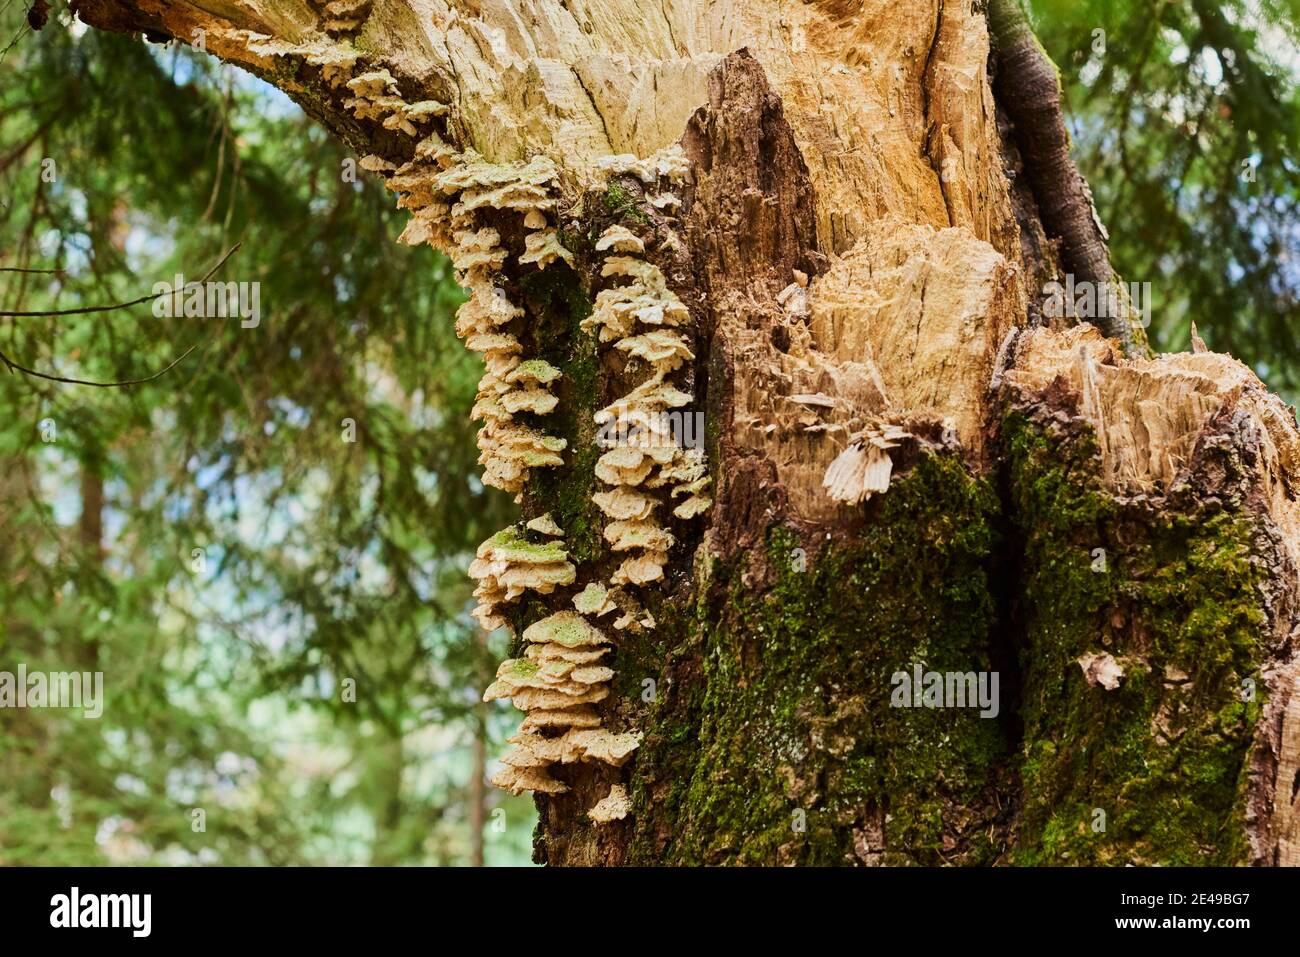 Tree fungi, burnt smoke spores on a broken tree trunk, Salzburg, Austria Stock Photo